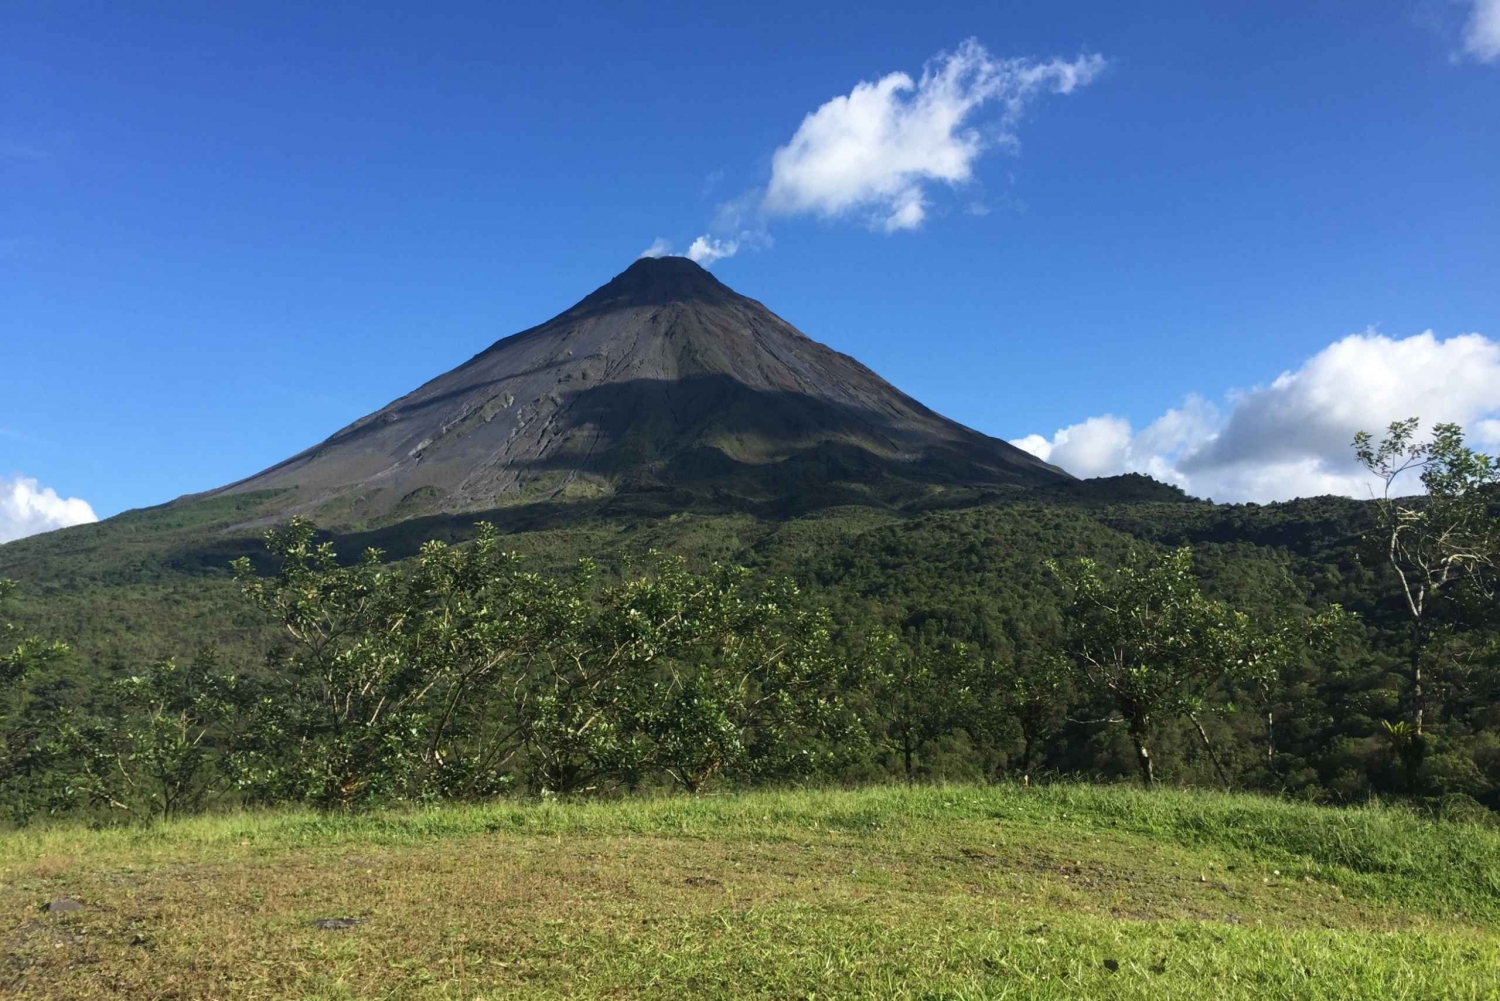 La Fortuna: Vandretur på Volcán Arenal